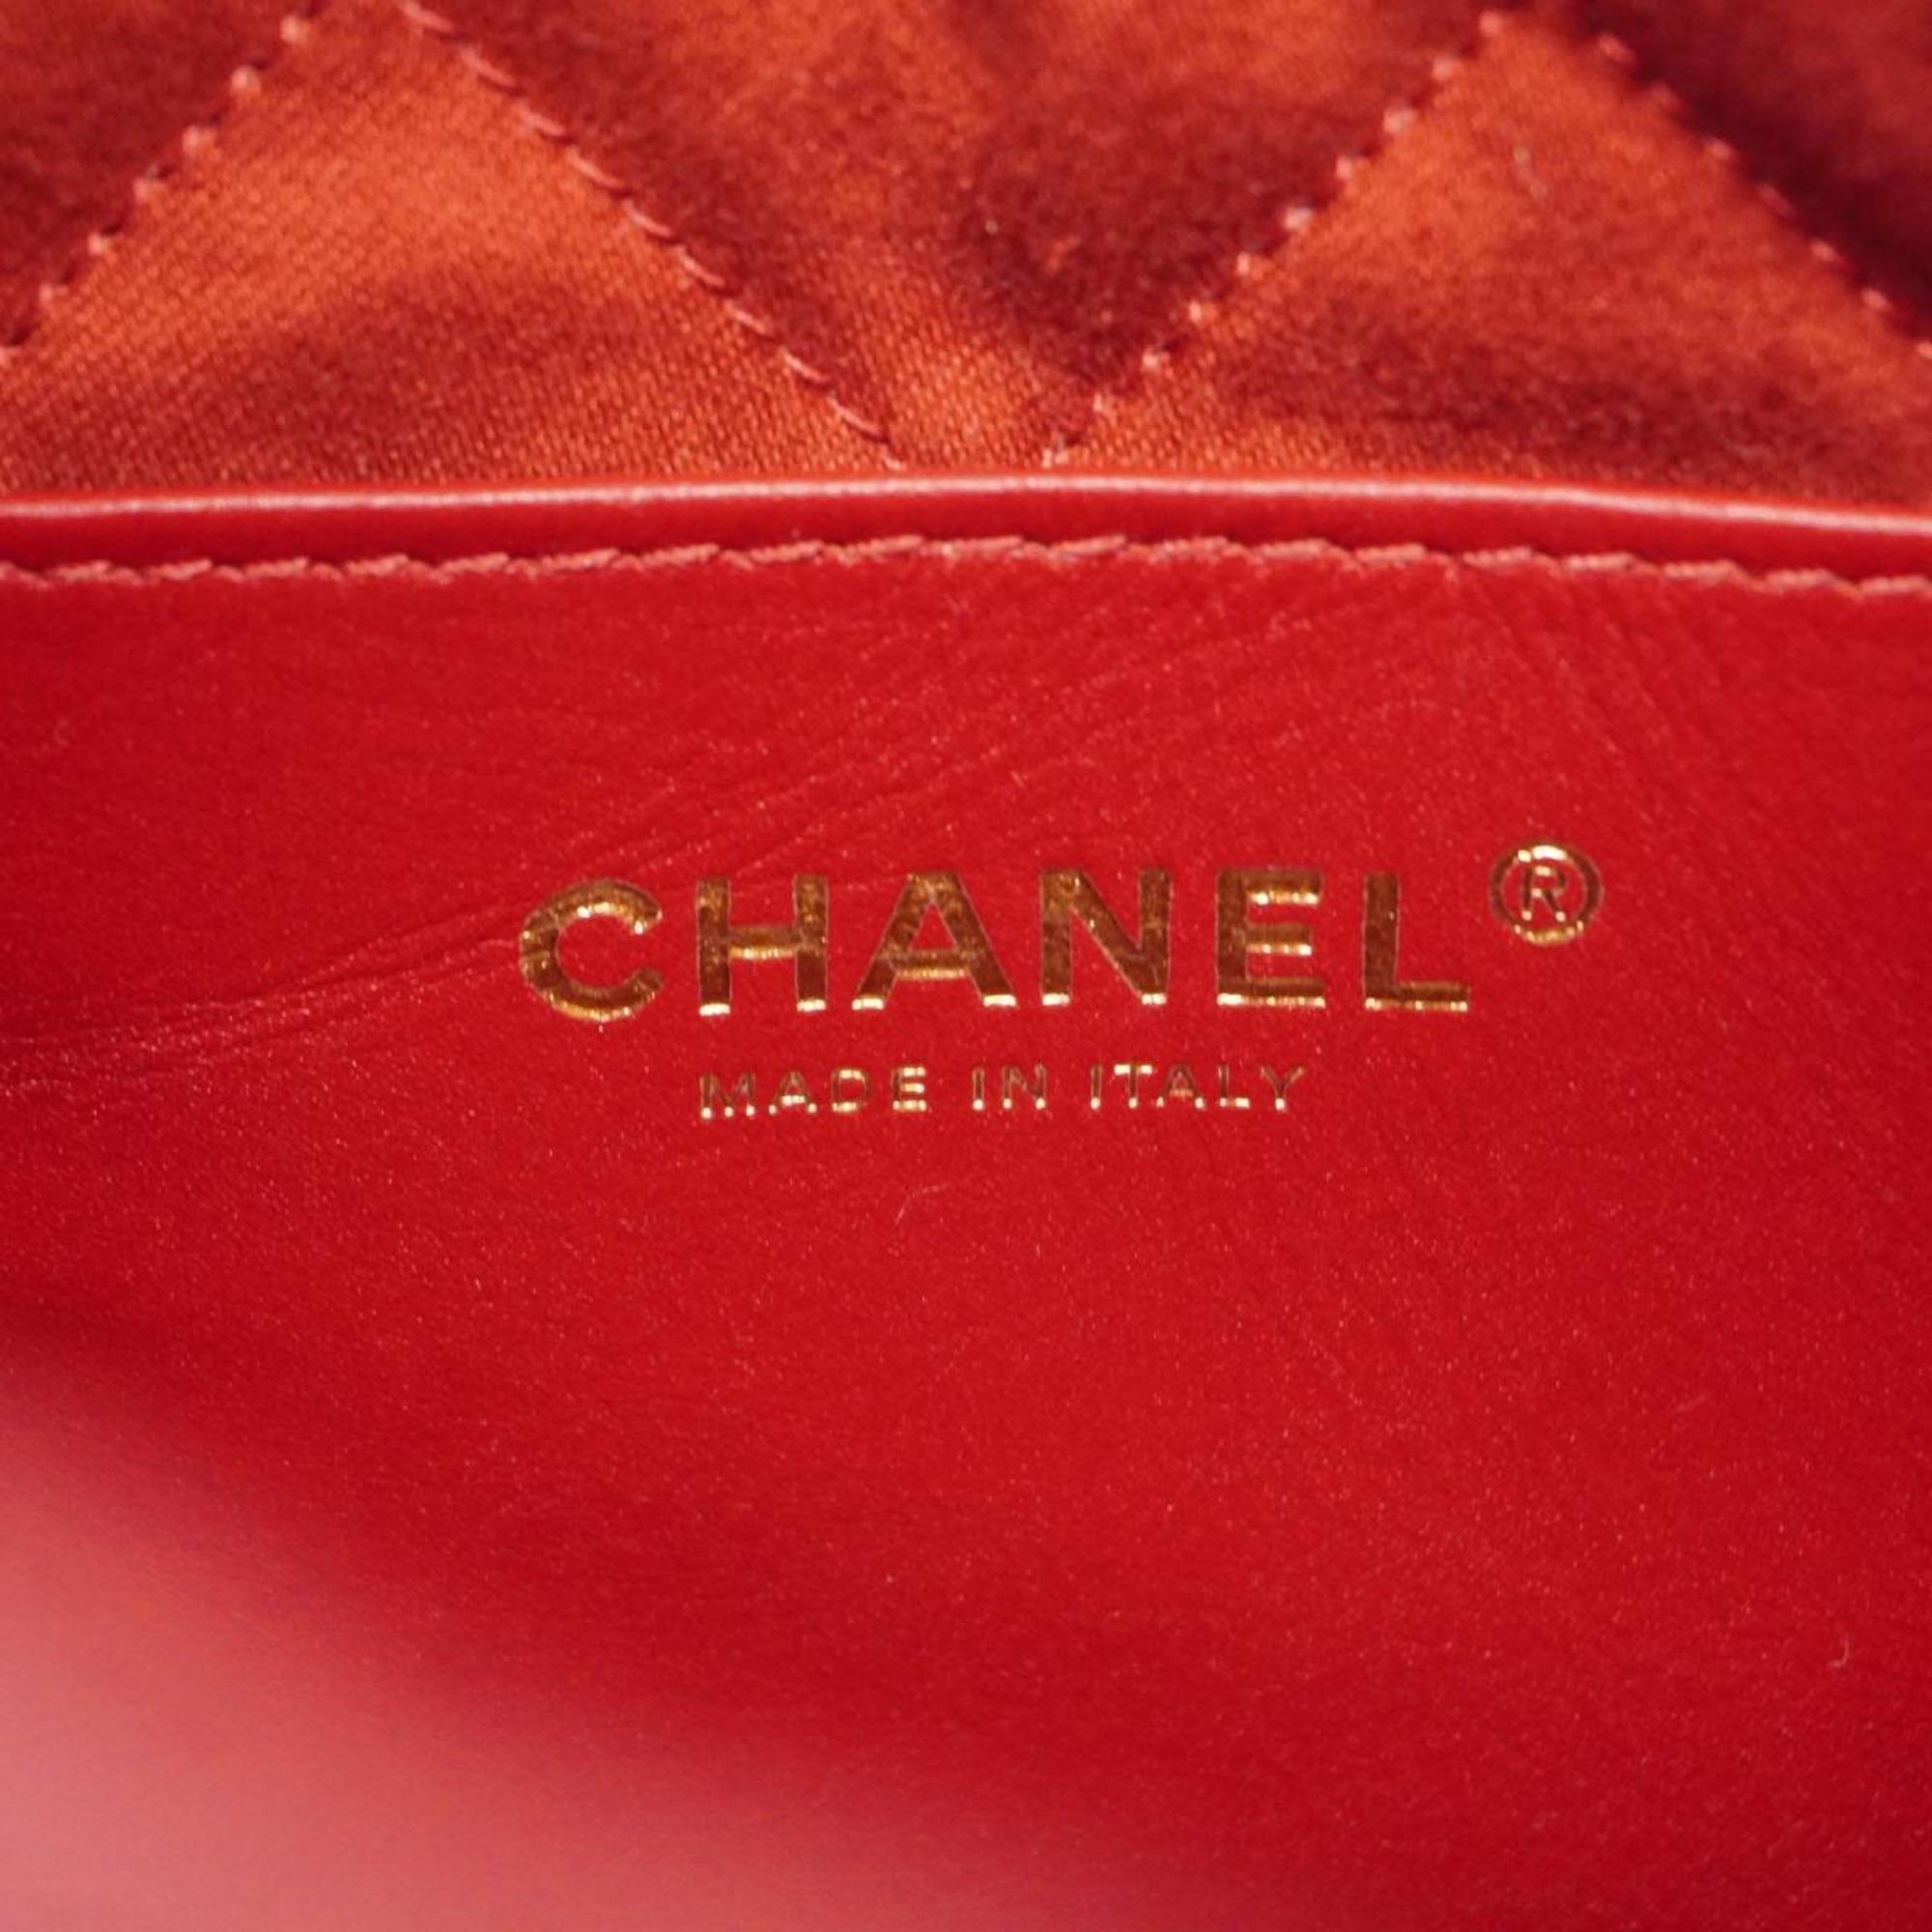 シャネル(Chanel) シャネル ハンドバッグ シャネル22 チェーンショルダー レザー レッド   レディース